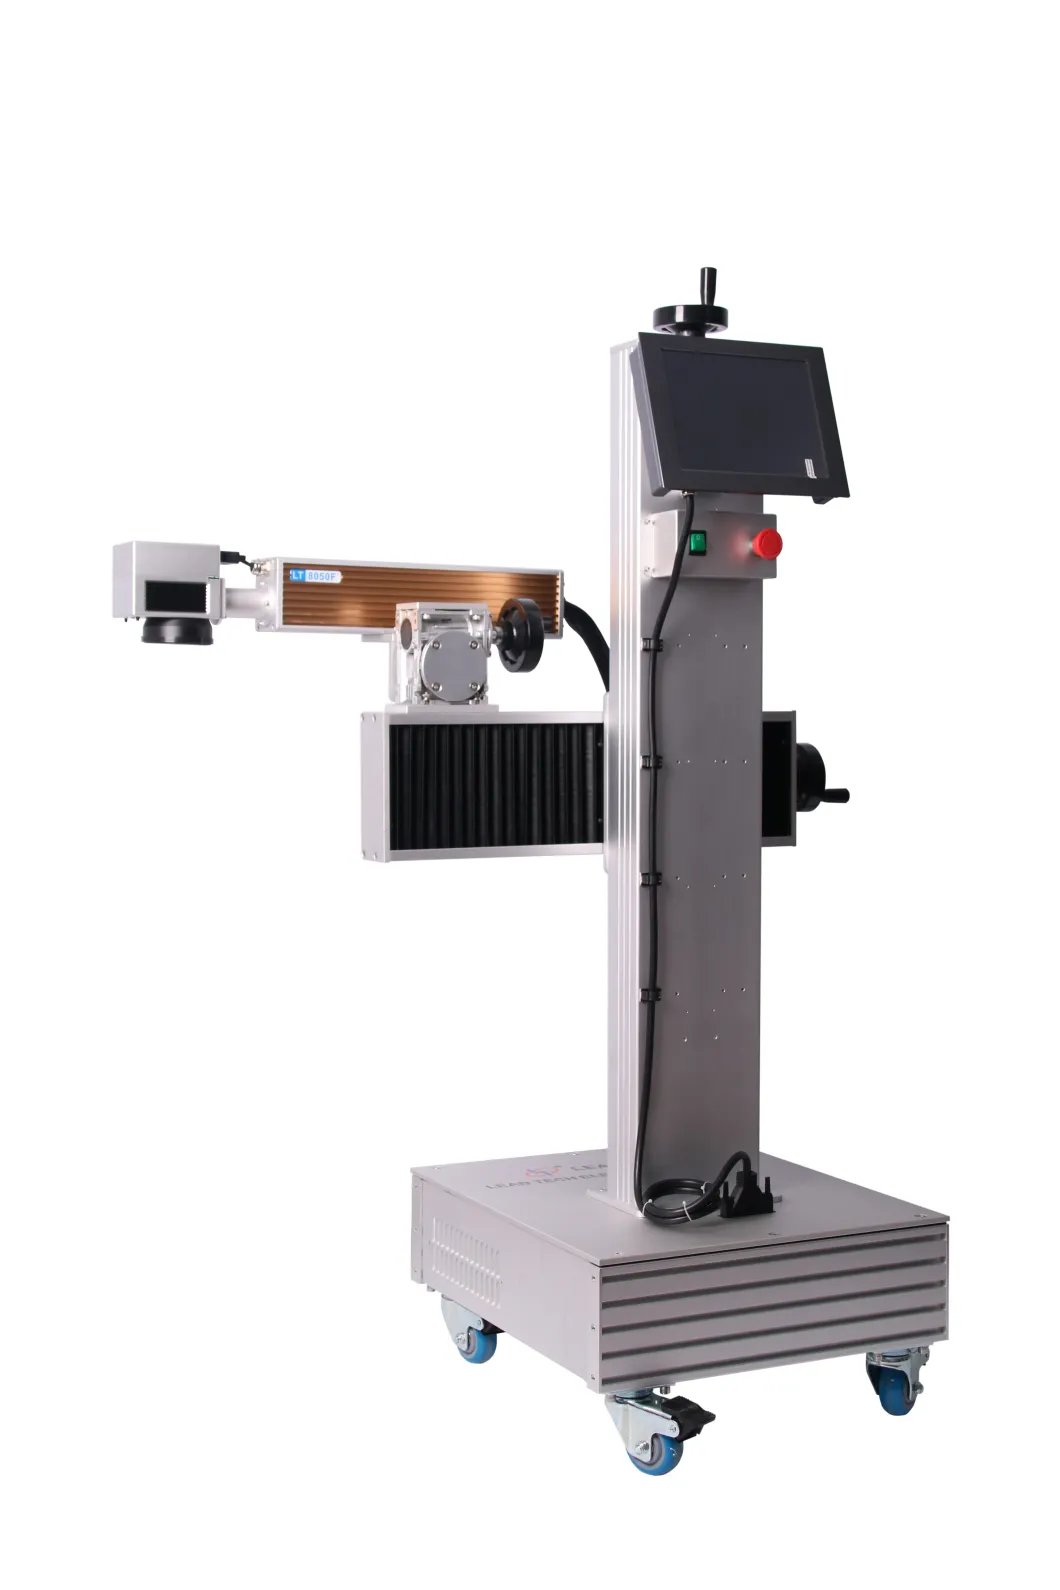 Lead Tech Lt8020f/Lt8030f/Lt8050f Marking Machine Fiber Laser Printer